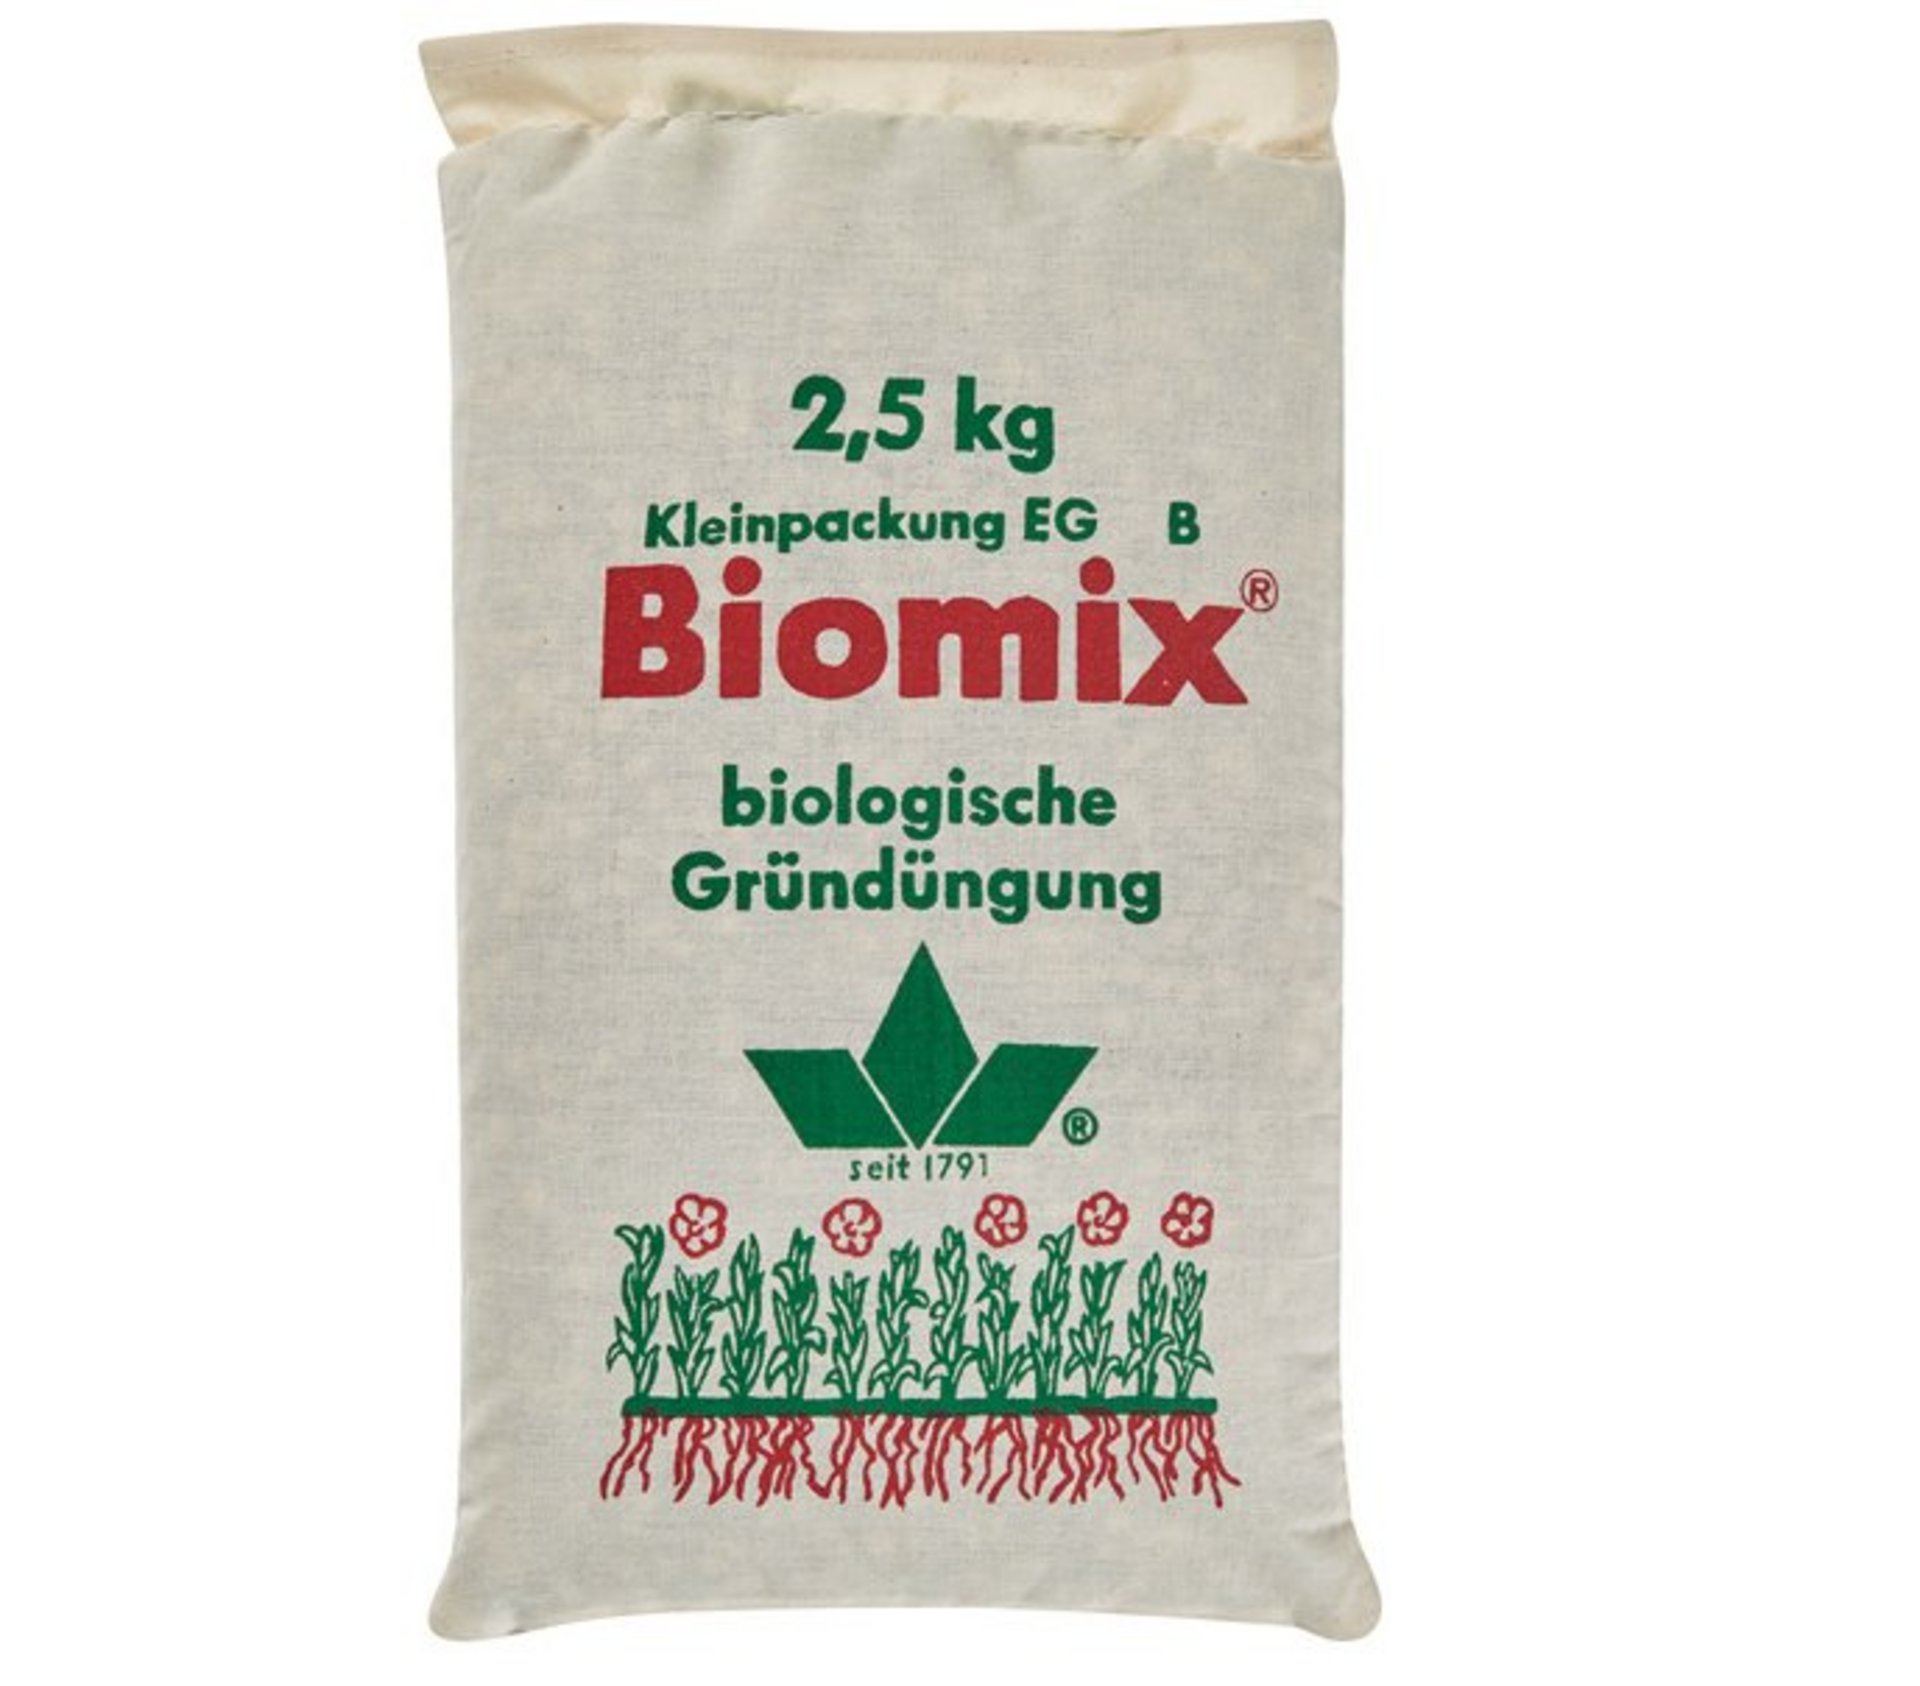 Rasetta Biomix 2,5 kg L. Stroetmann Saat